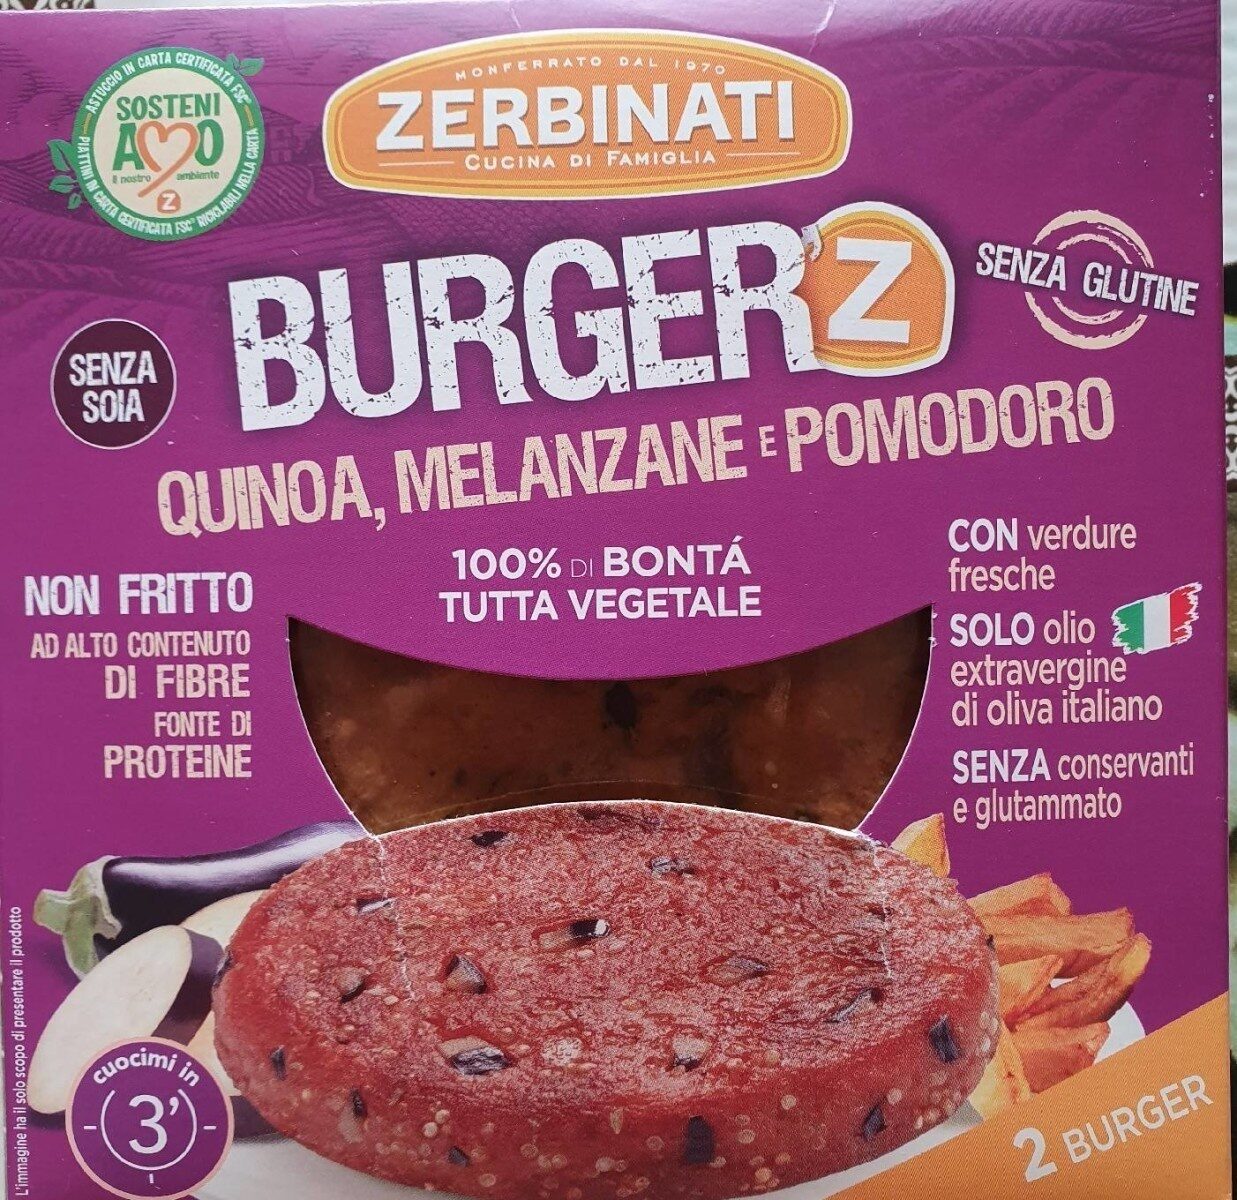 Burger'z quinoa, melanzane e pomodoro - Product - it